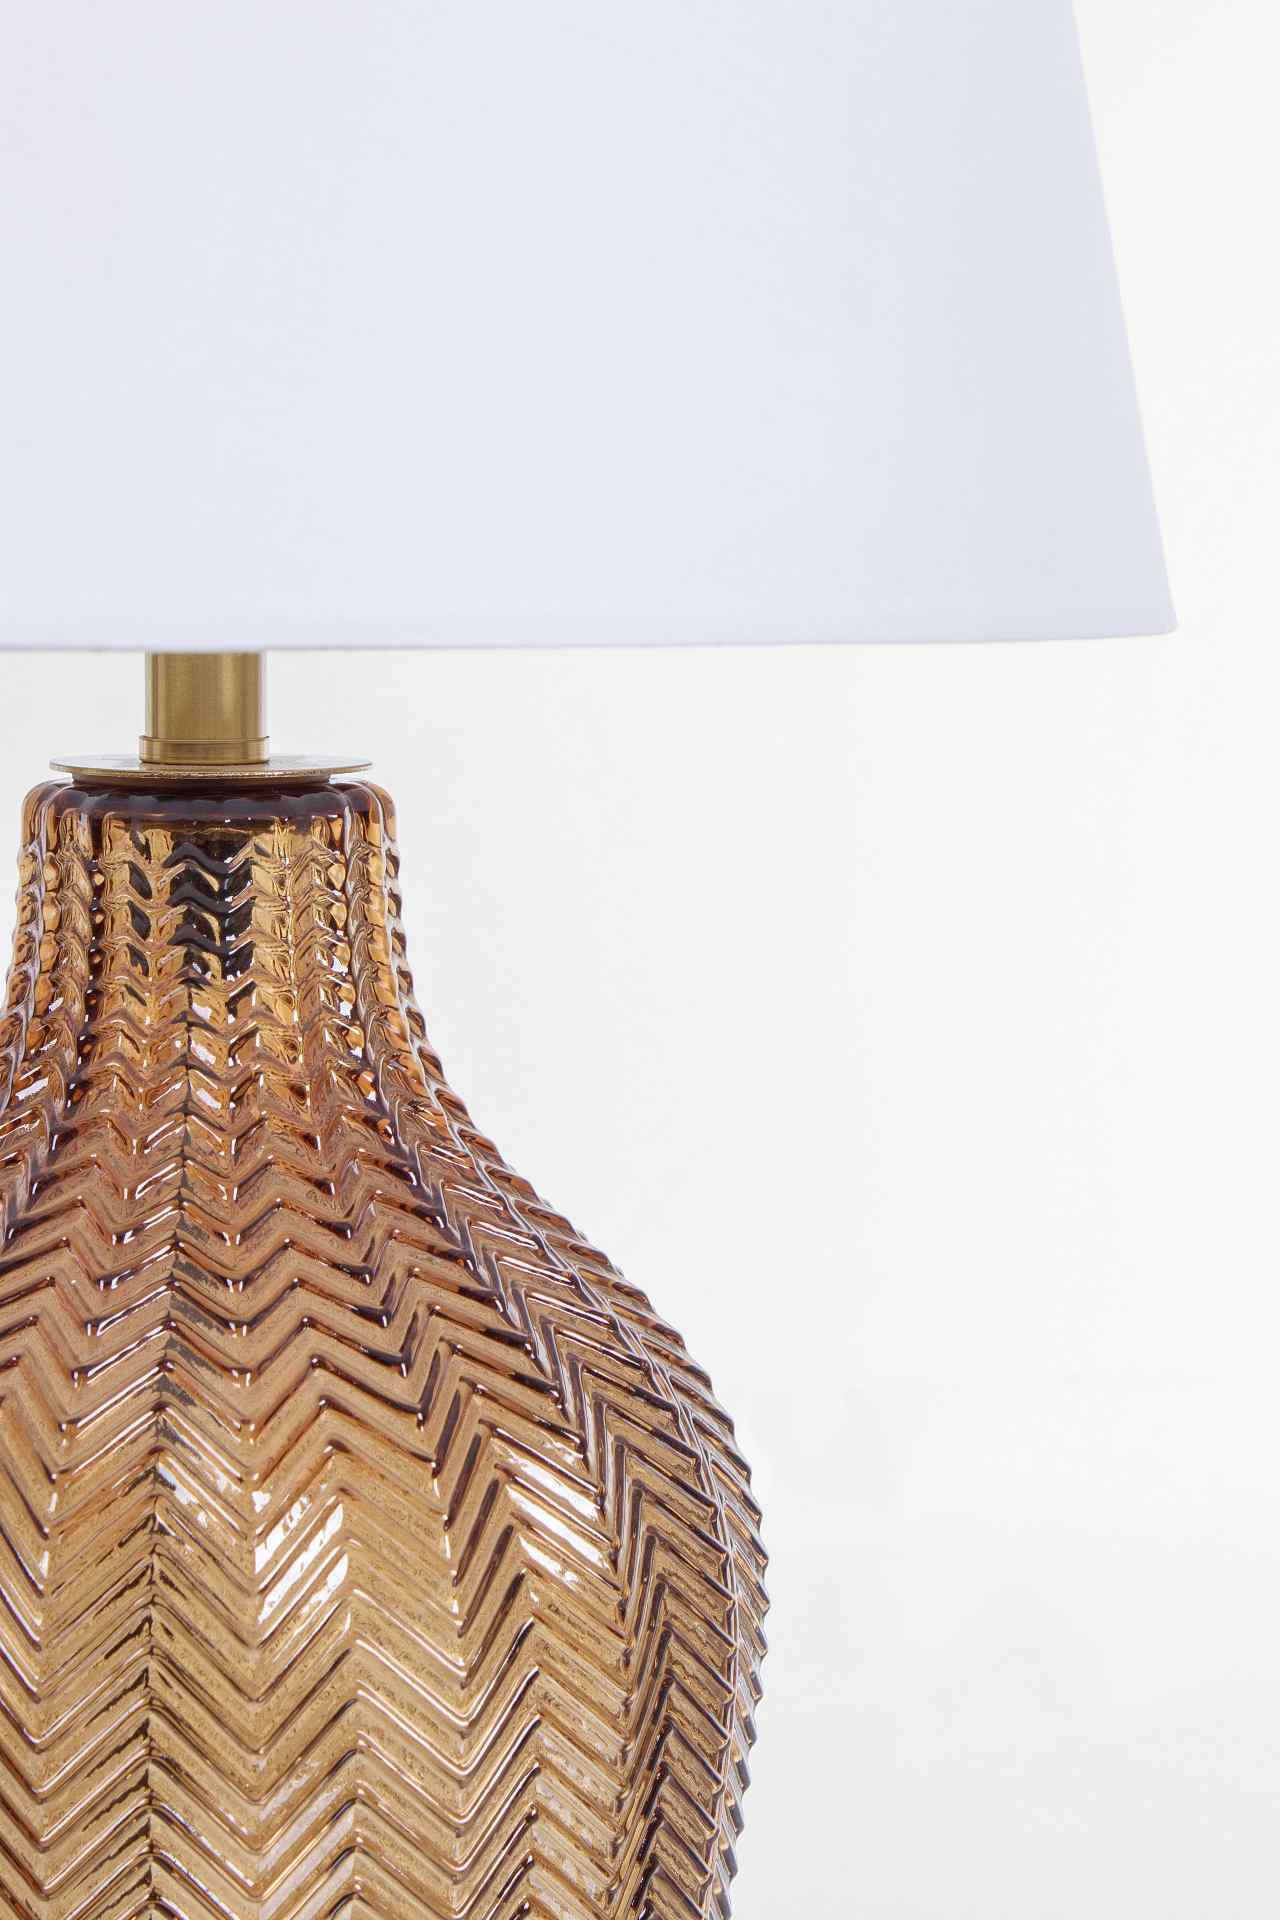 Die Tischleuchte Gleaming überzeugt mit ihrem klassischen Design. Gefertigt wurde sie aus Glas, welches einen braunen Farbton besitzt. Der Lampenschirm ist aus Terylen und hat eine weiße Farbe. Die Lampe besitzt eine Höhe von 62 cm.